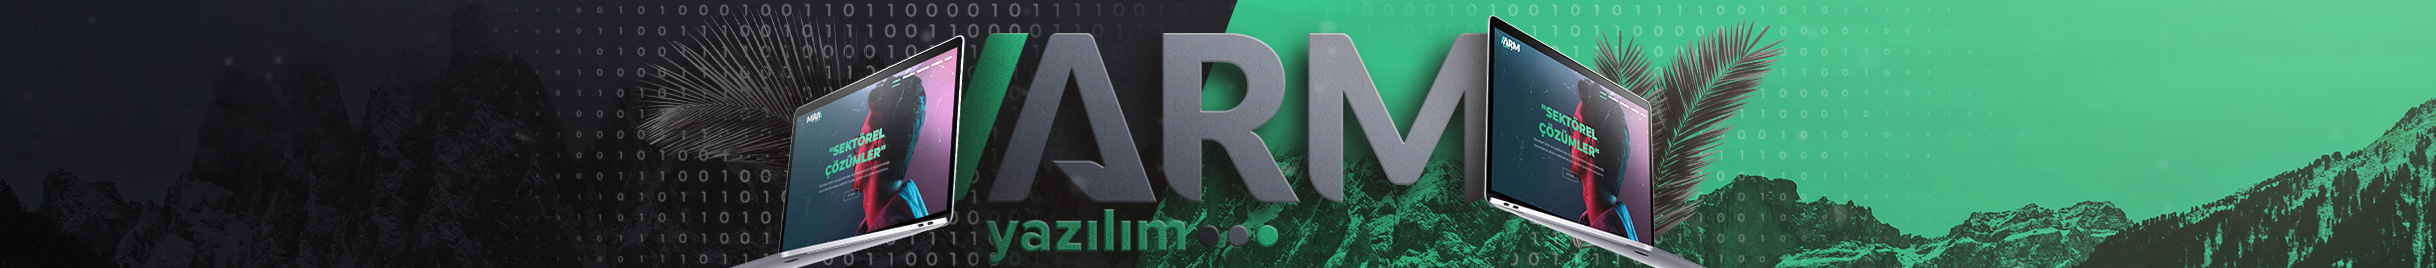 arm yazılım's profile banner